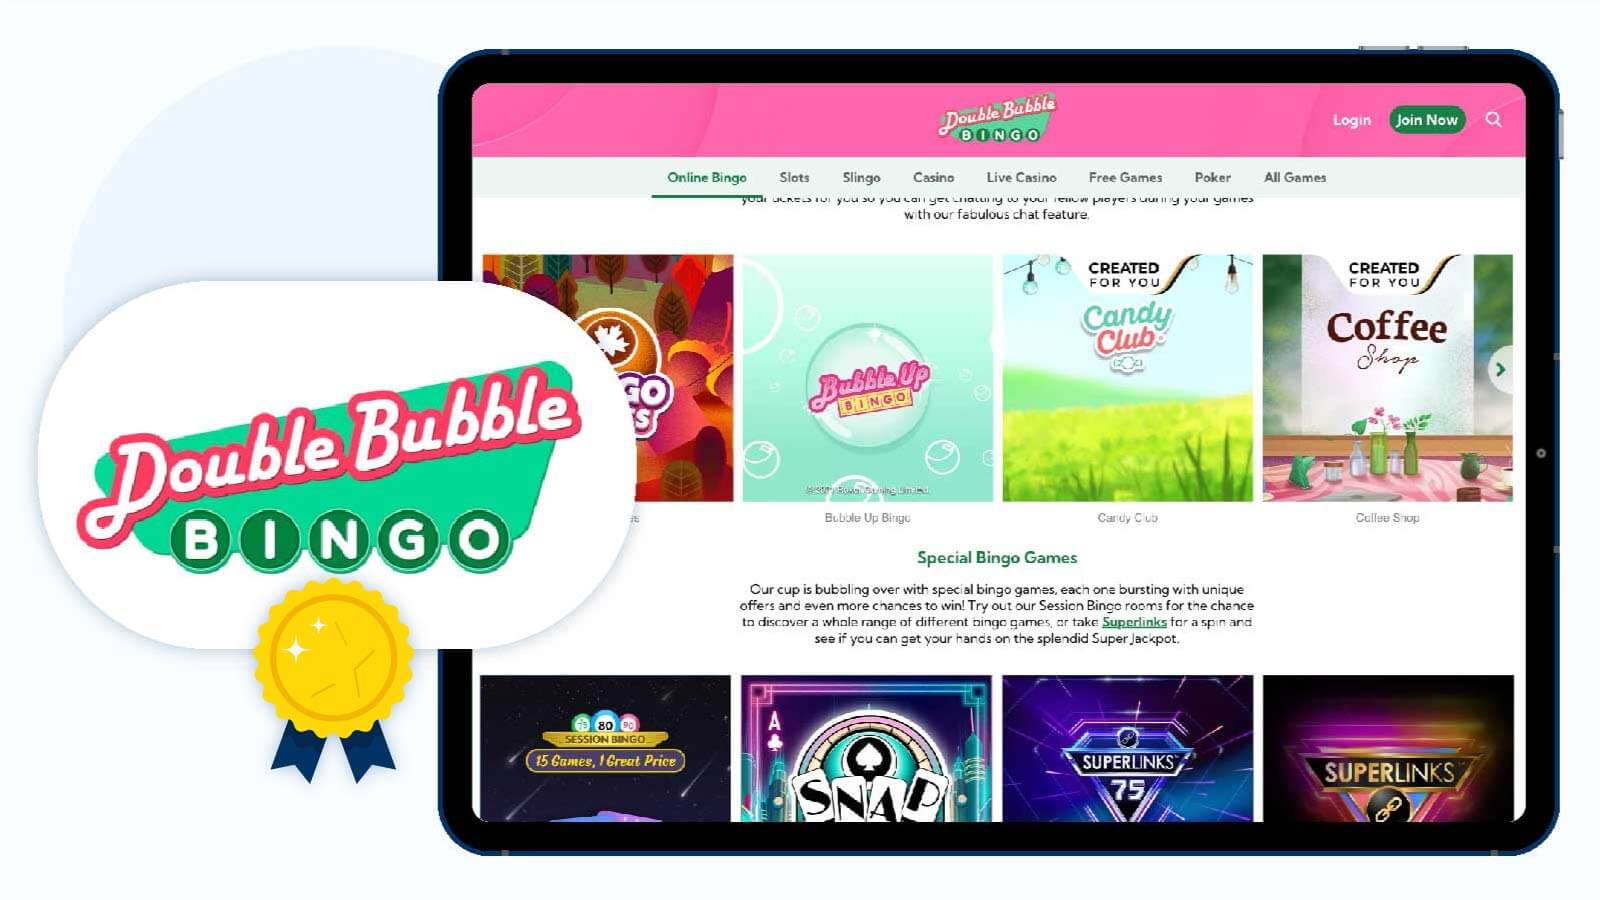 Double Bubble Bingo – Best Bingo Site UK Overall